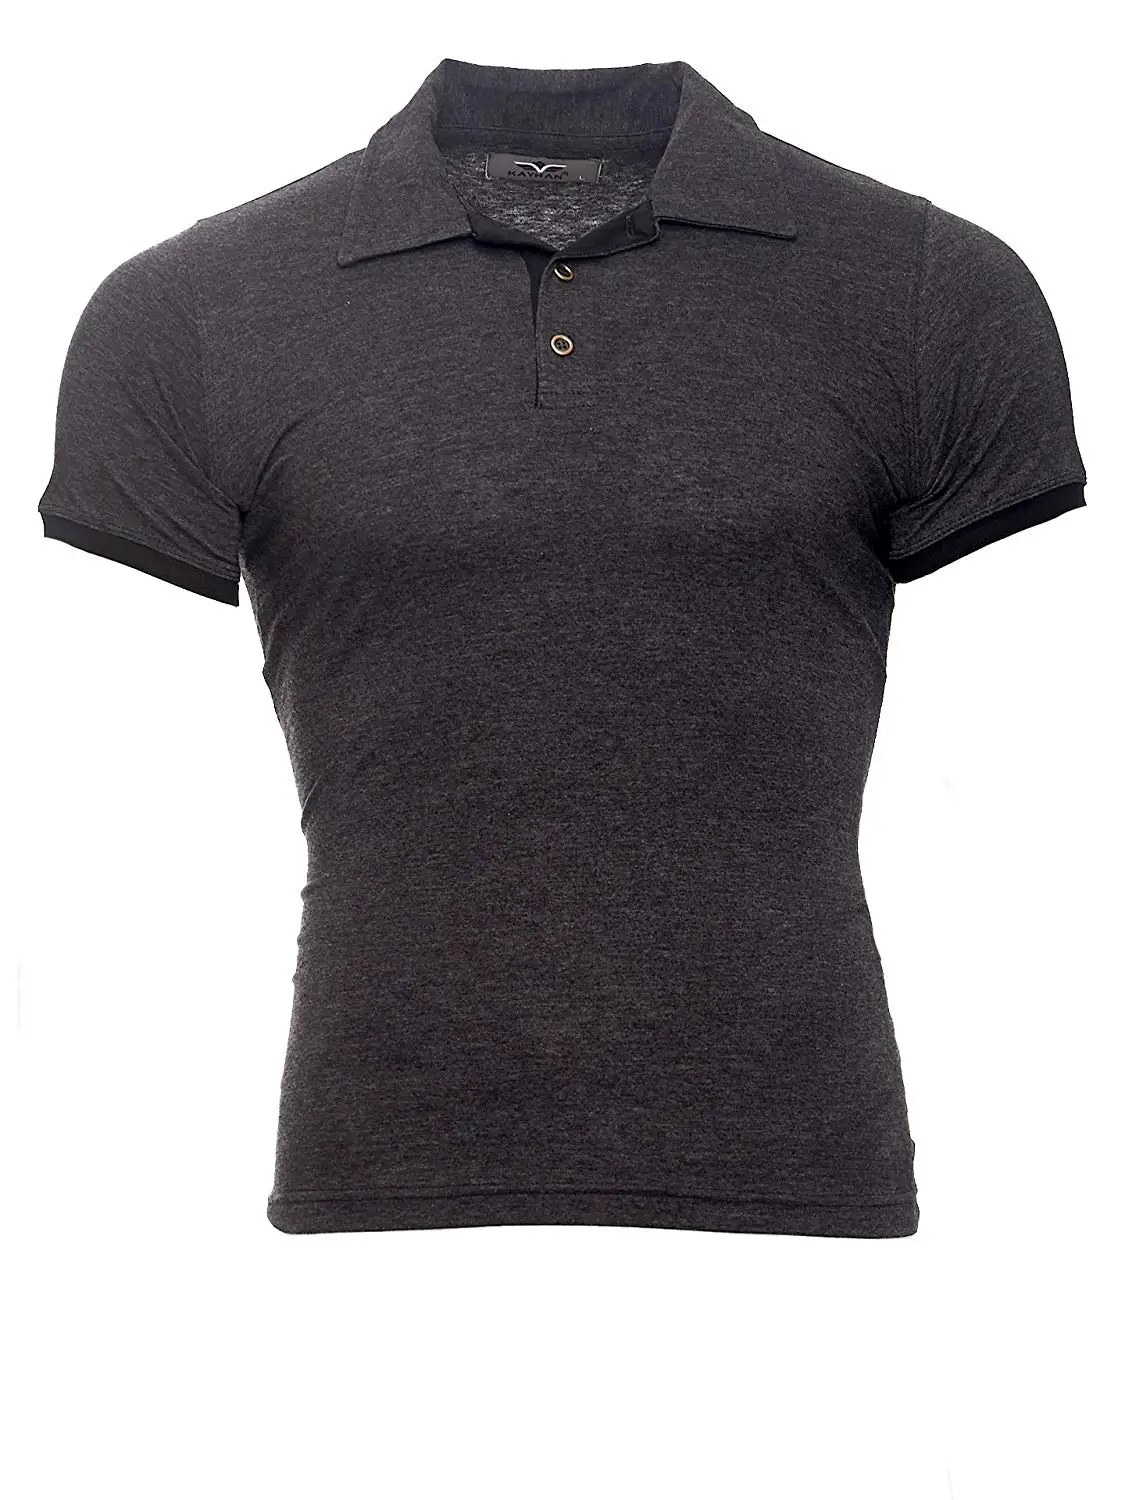 Мужские рубашки поло, брендовая одежда 2019, летняя рубашка с коротким рукавом, Мужская черная хлопковая рубашка, мужские рубашки поло